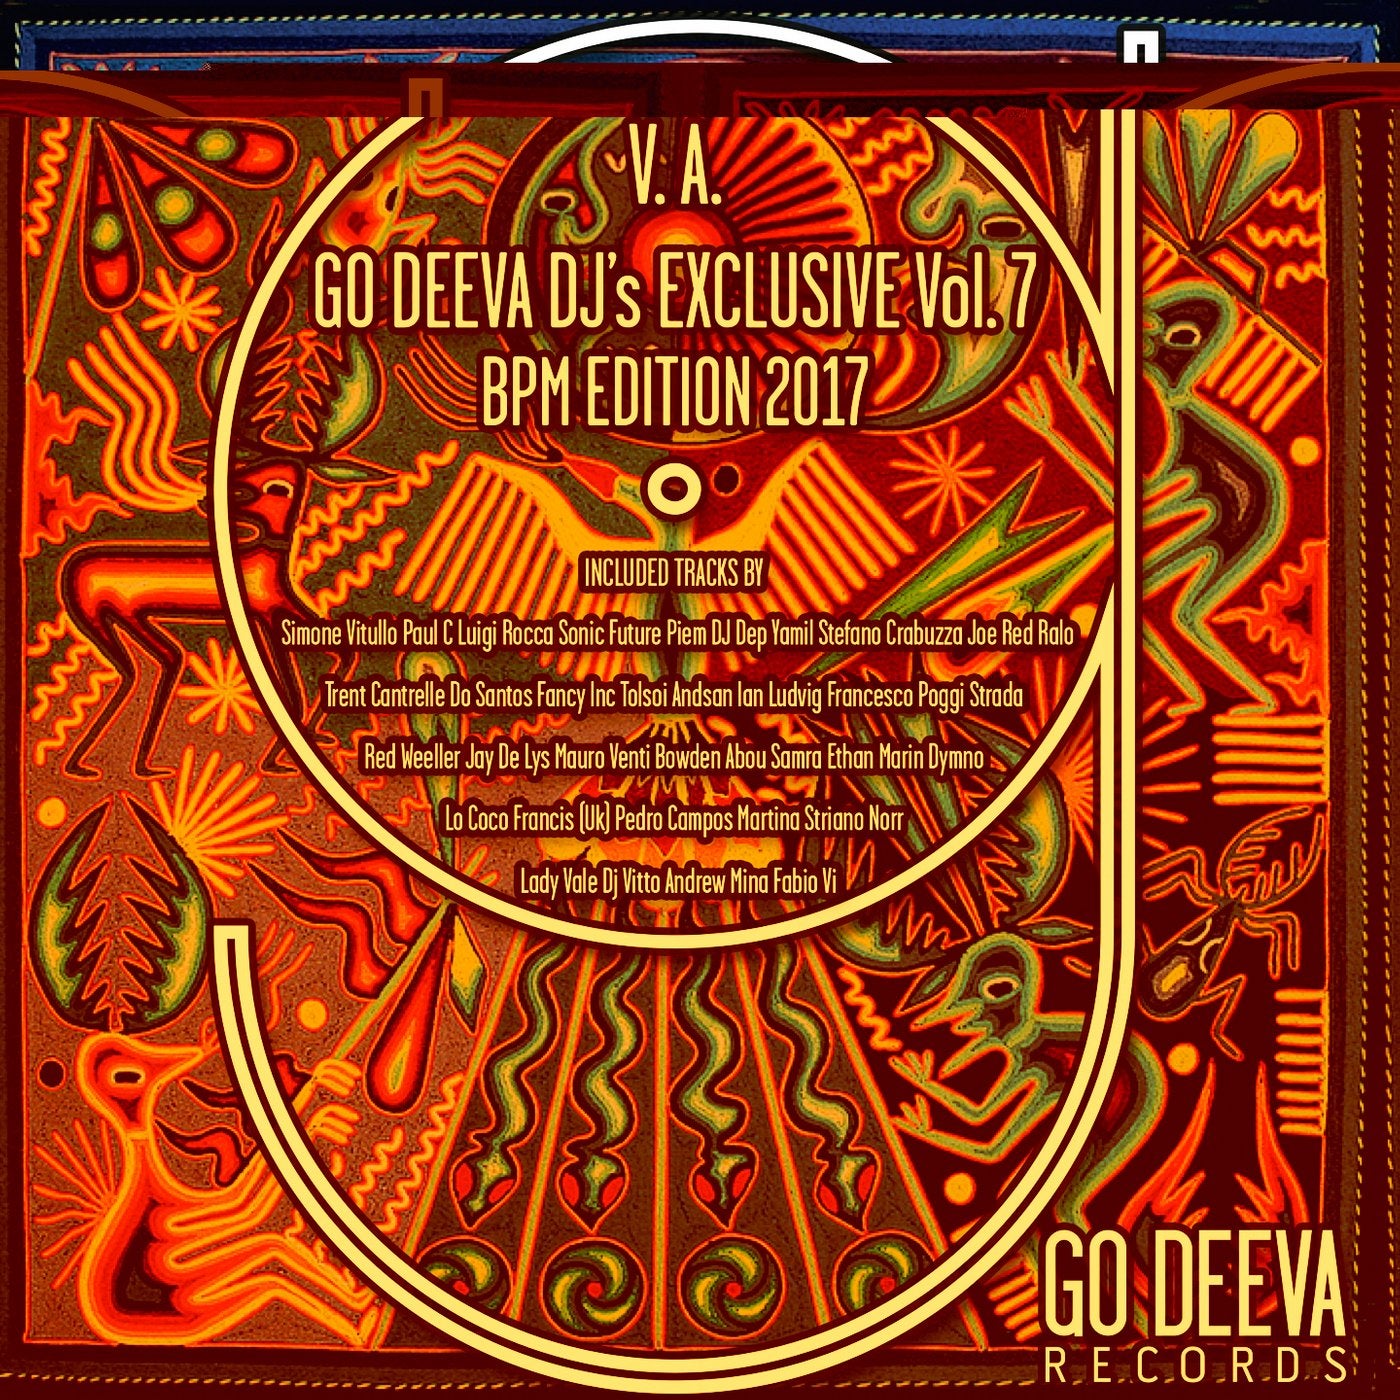 GO DEEVA DJ's EXCLUSIVE Vol.7 BPM EDITION 2017